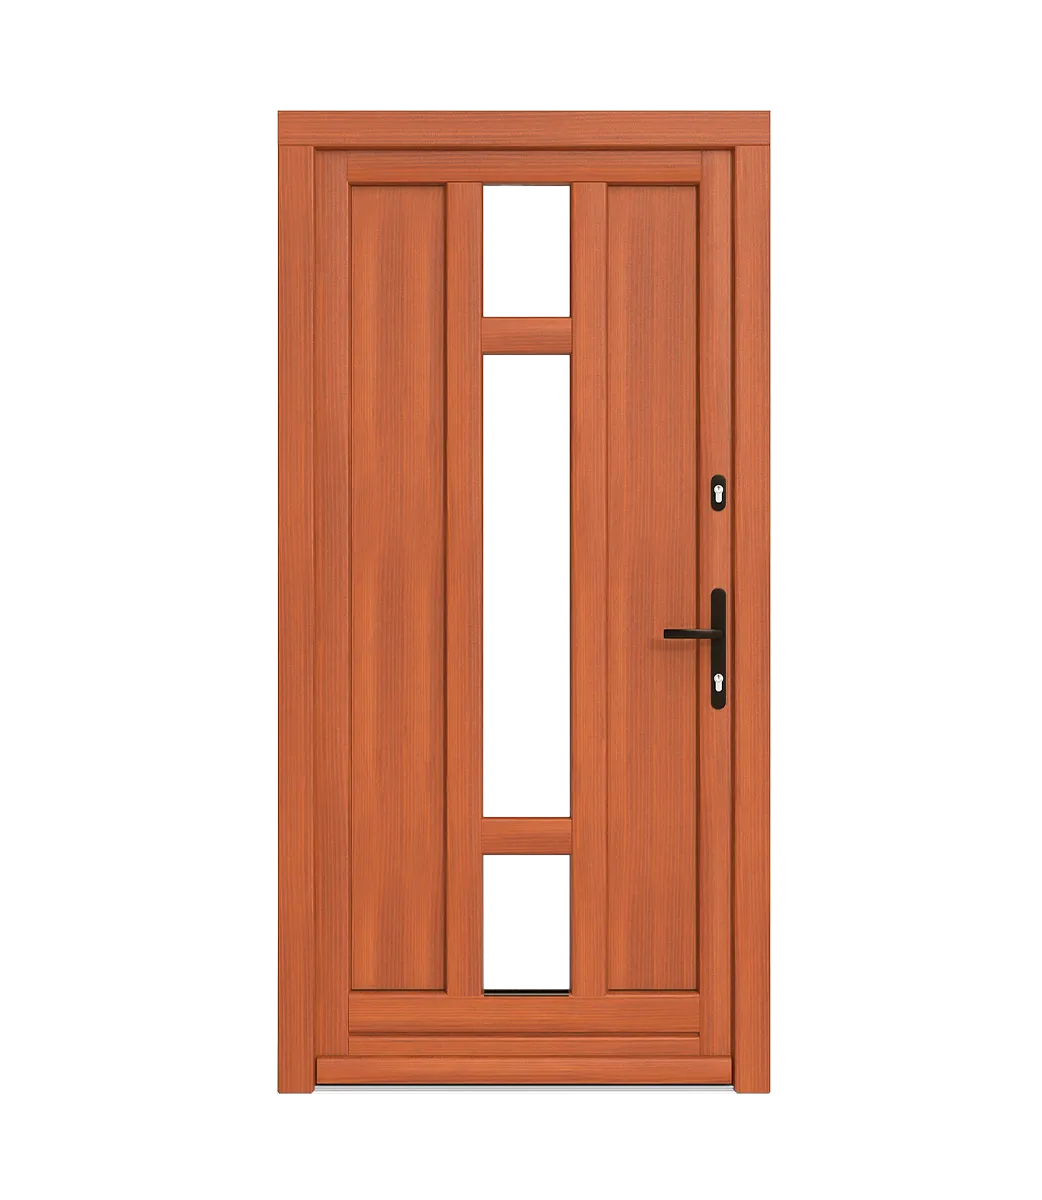 Výstuhy v drevených dverách